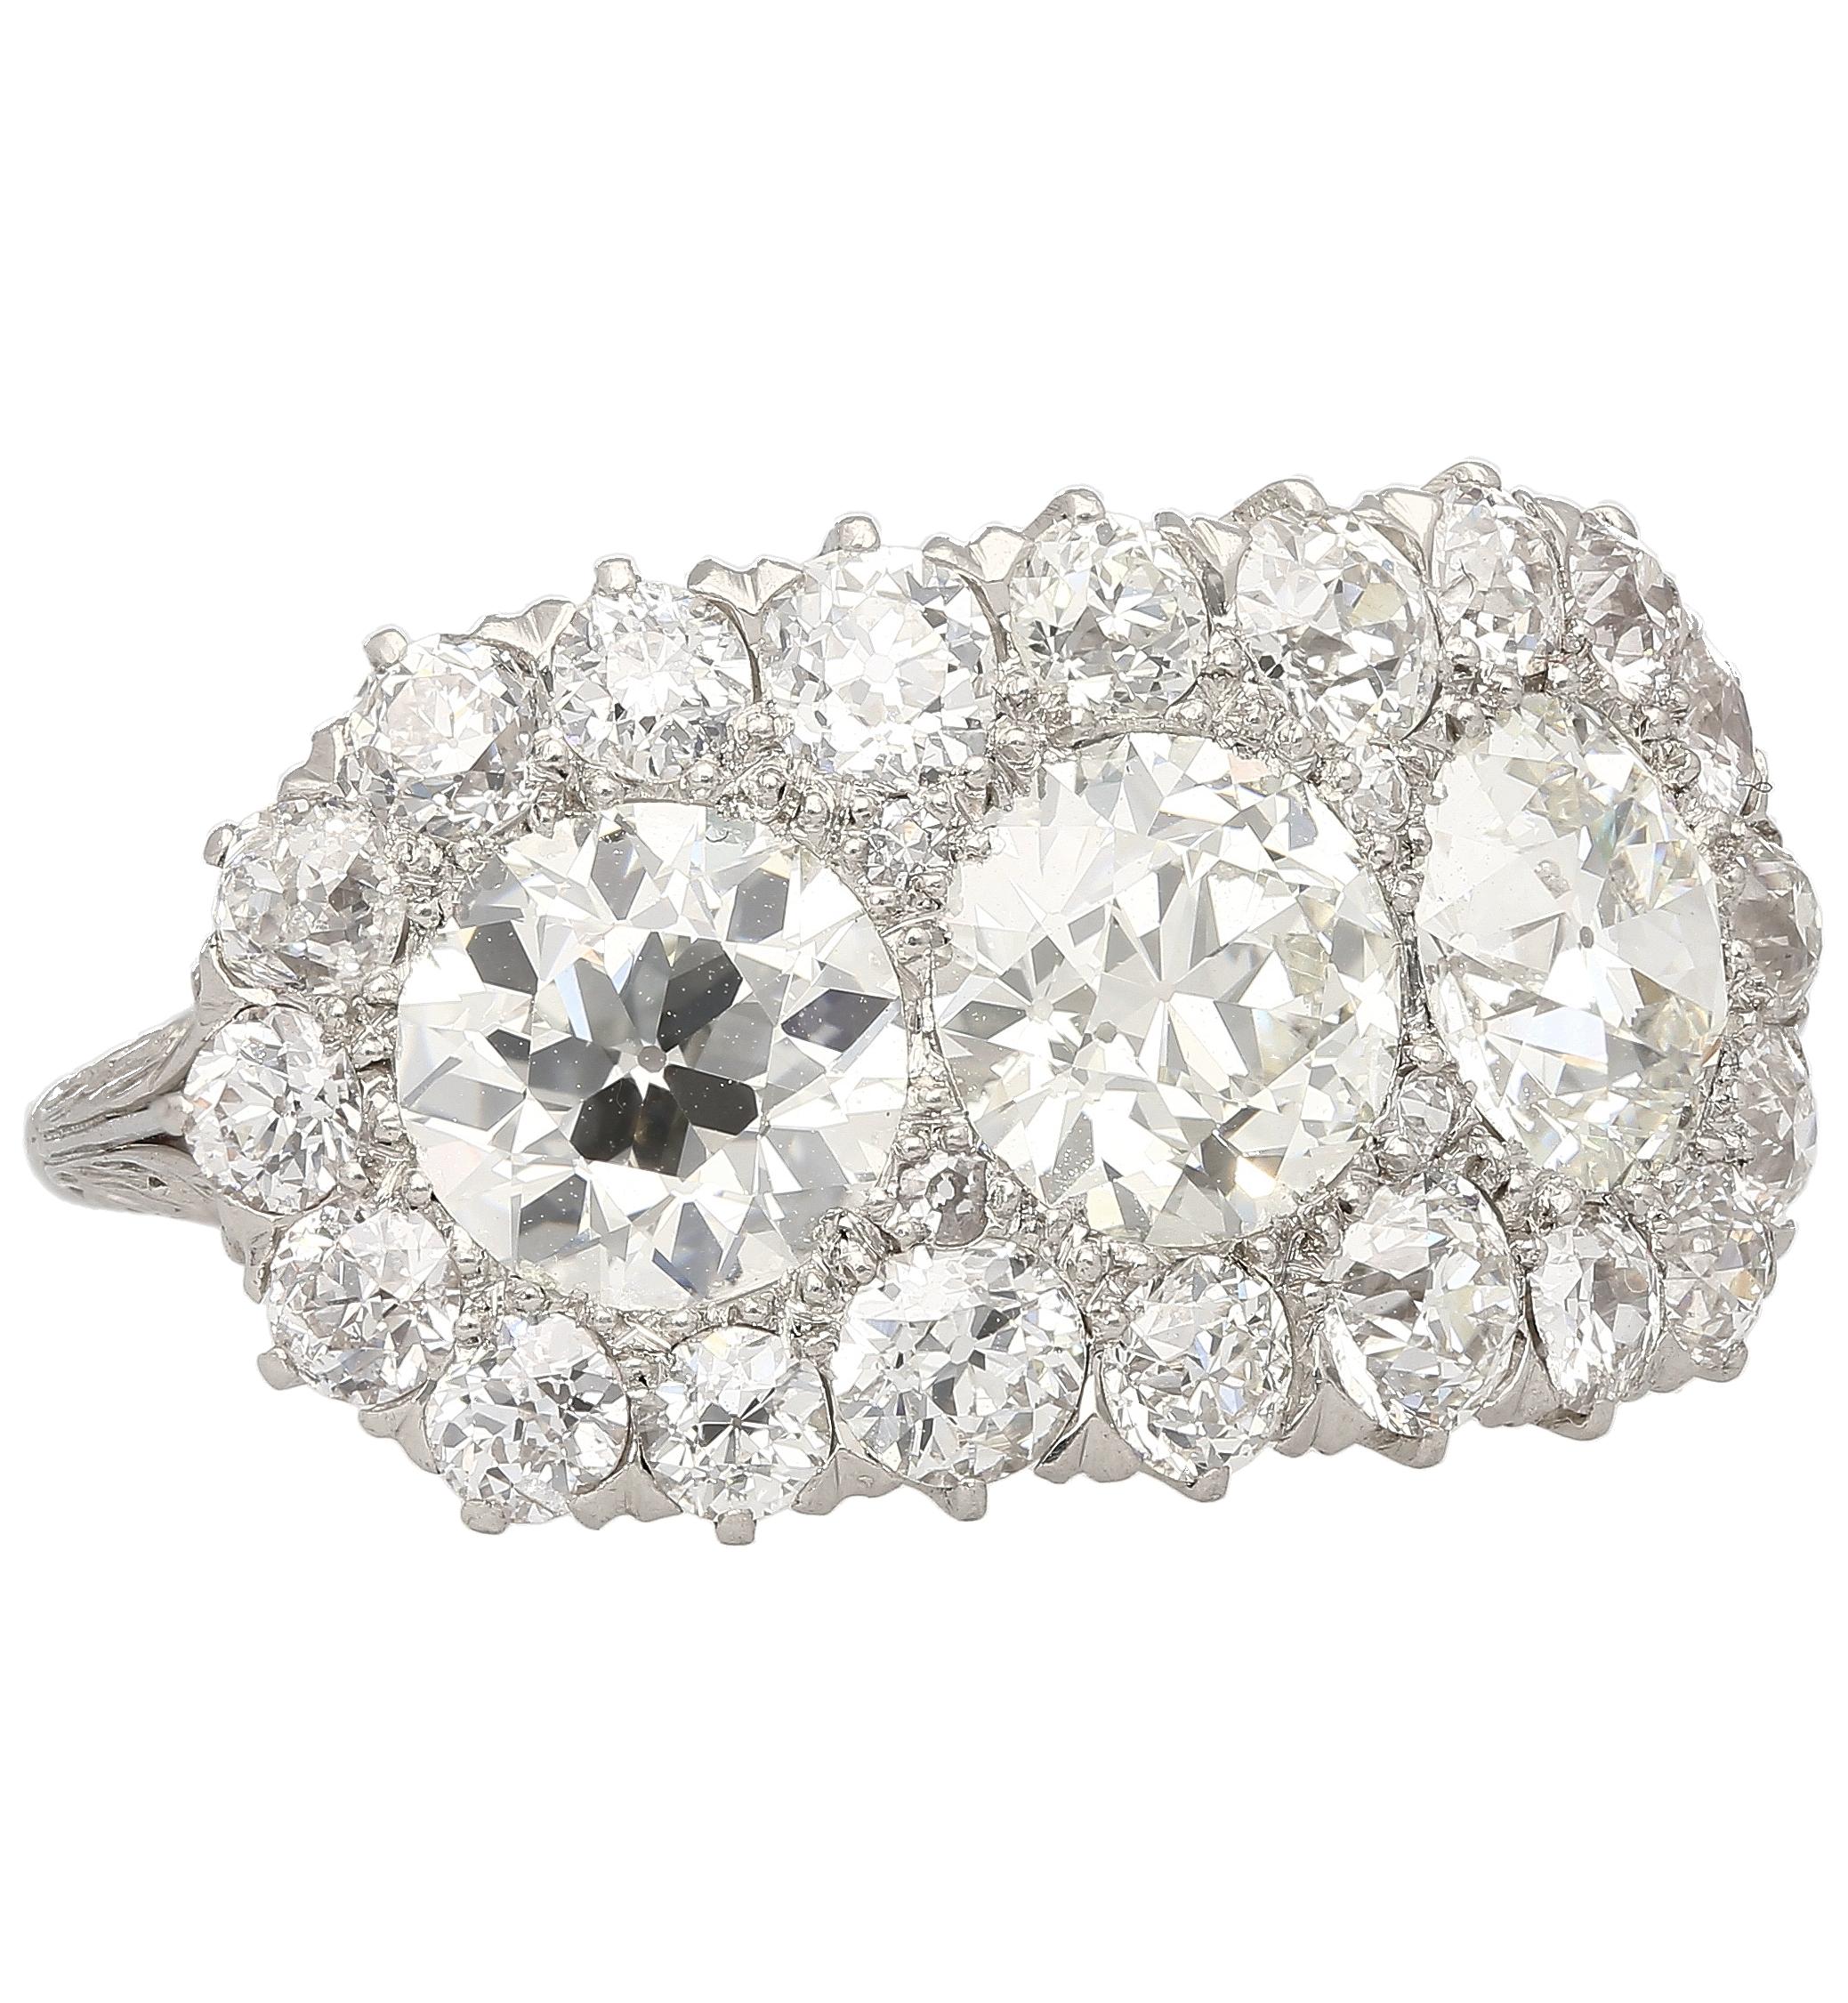 Vintage Art Deco Verlobungsring mit drei Steinen aus natürlichen Diamanten. In Platin gefasst, mit handgeschnitztem Filigran auf dem Schaft. Die drei Steine in der Mitte sind alteuropäisch geschliffen und wiegen jeweils etwa 1,50 Karat. 

Verziert